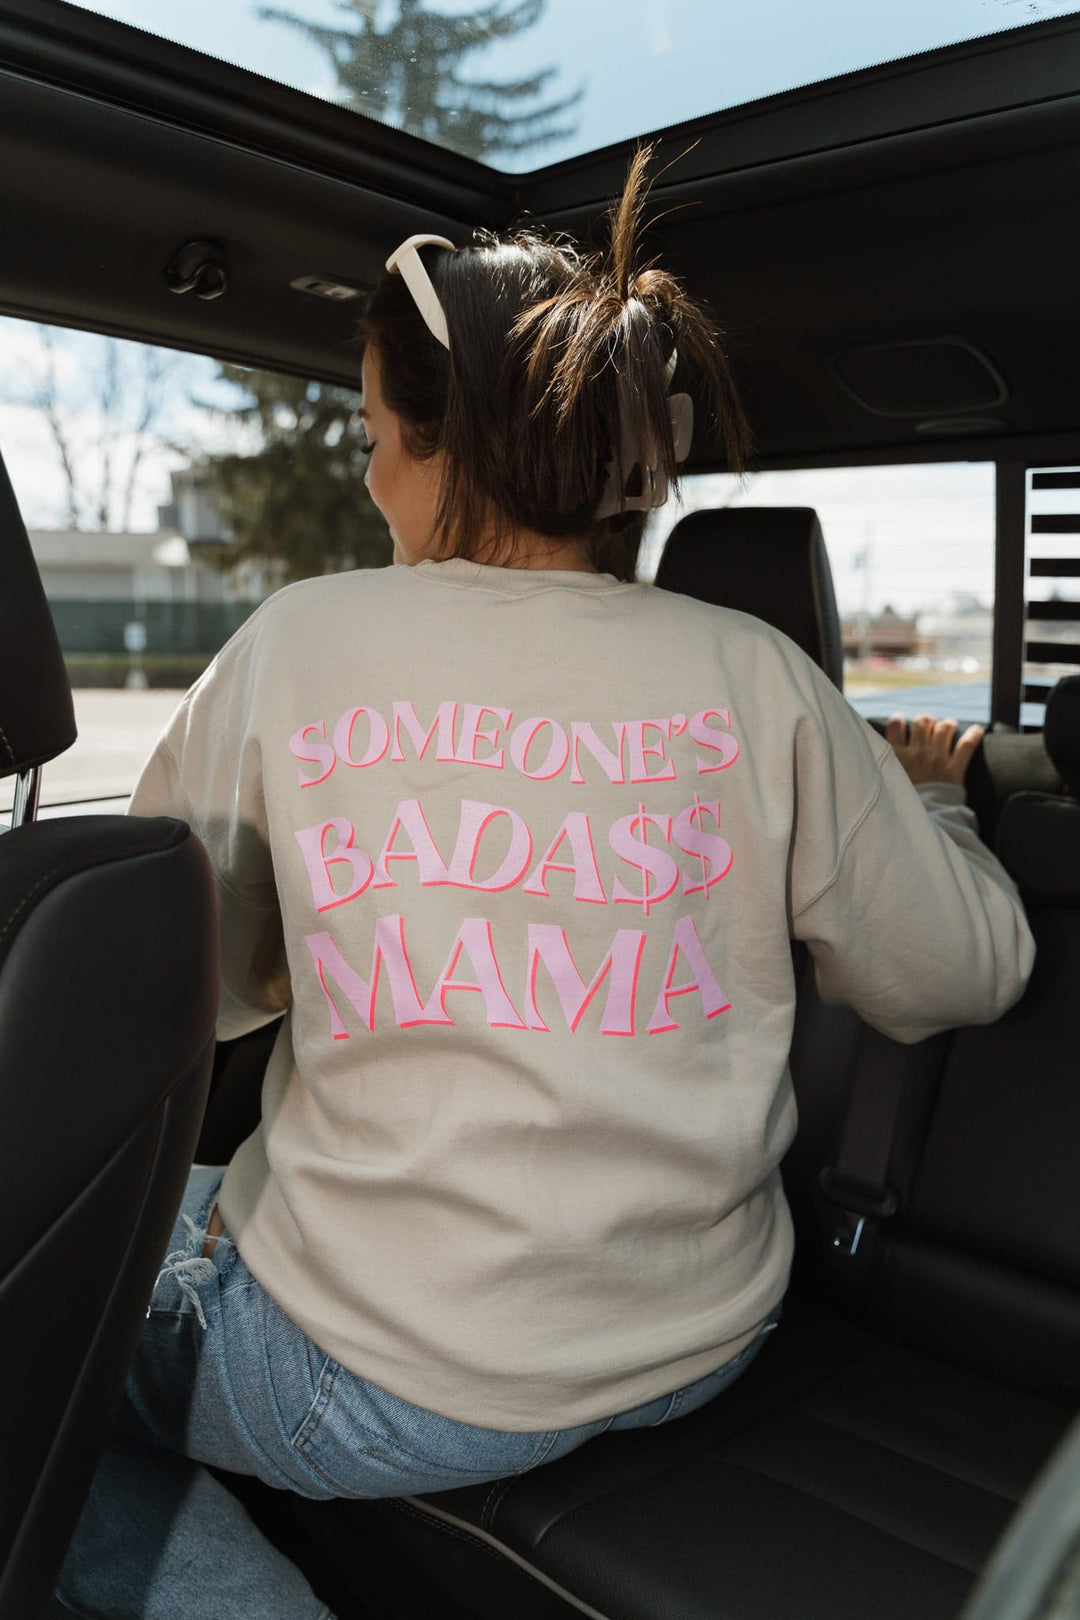 Someone’s Bada$$ Mama Sweatshirt - Sand